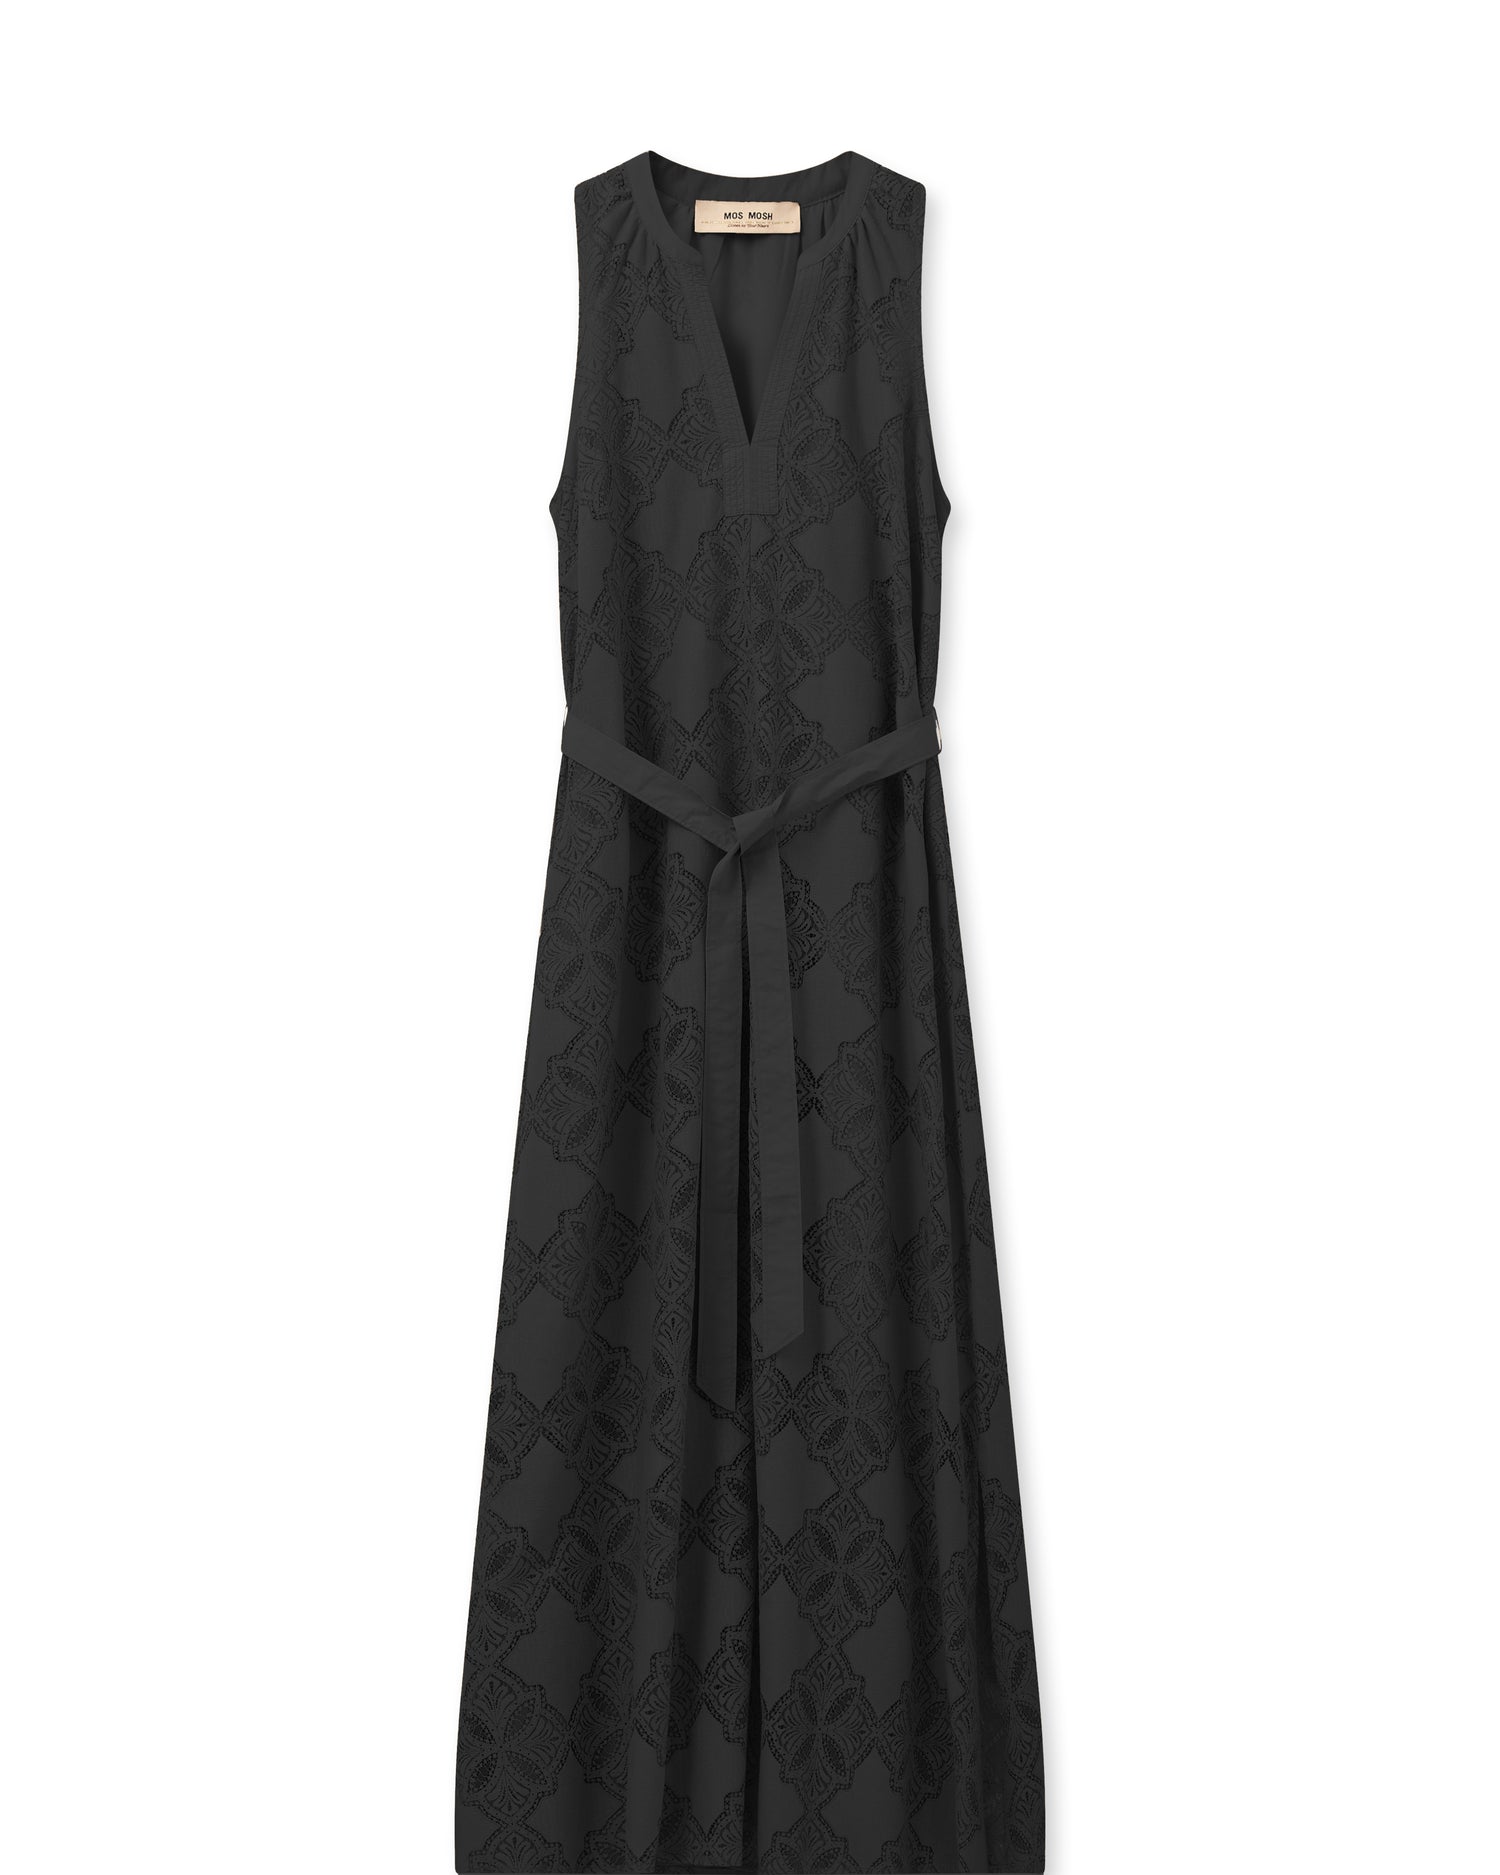 Dress - Paolina Lace Dress - Black